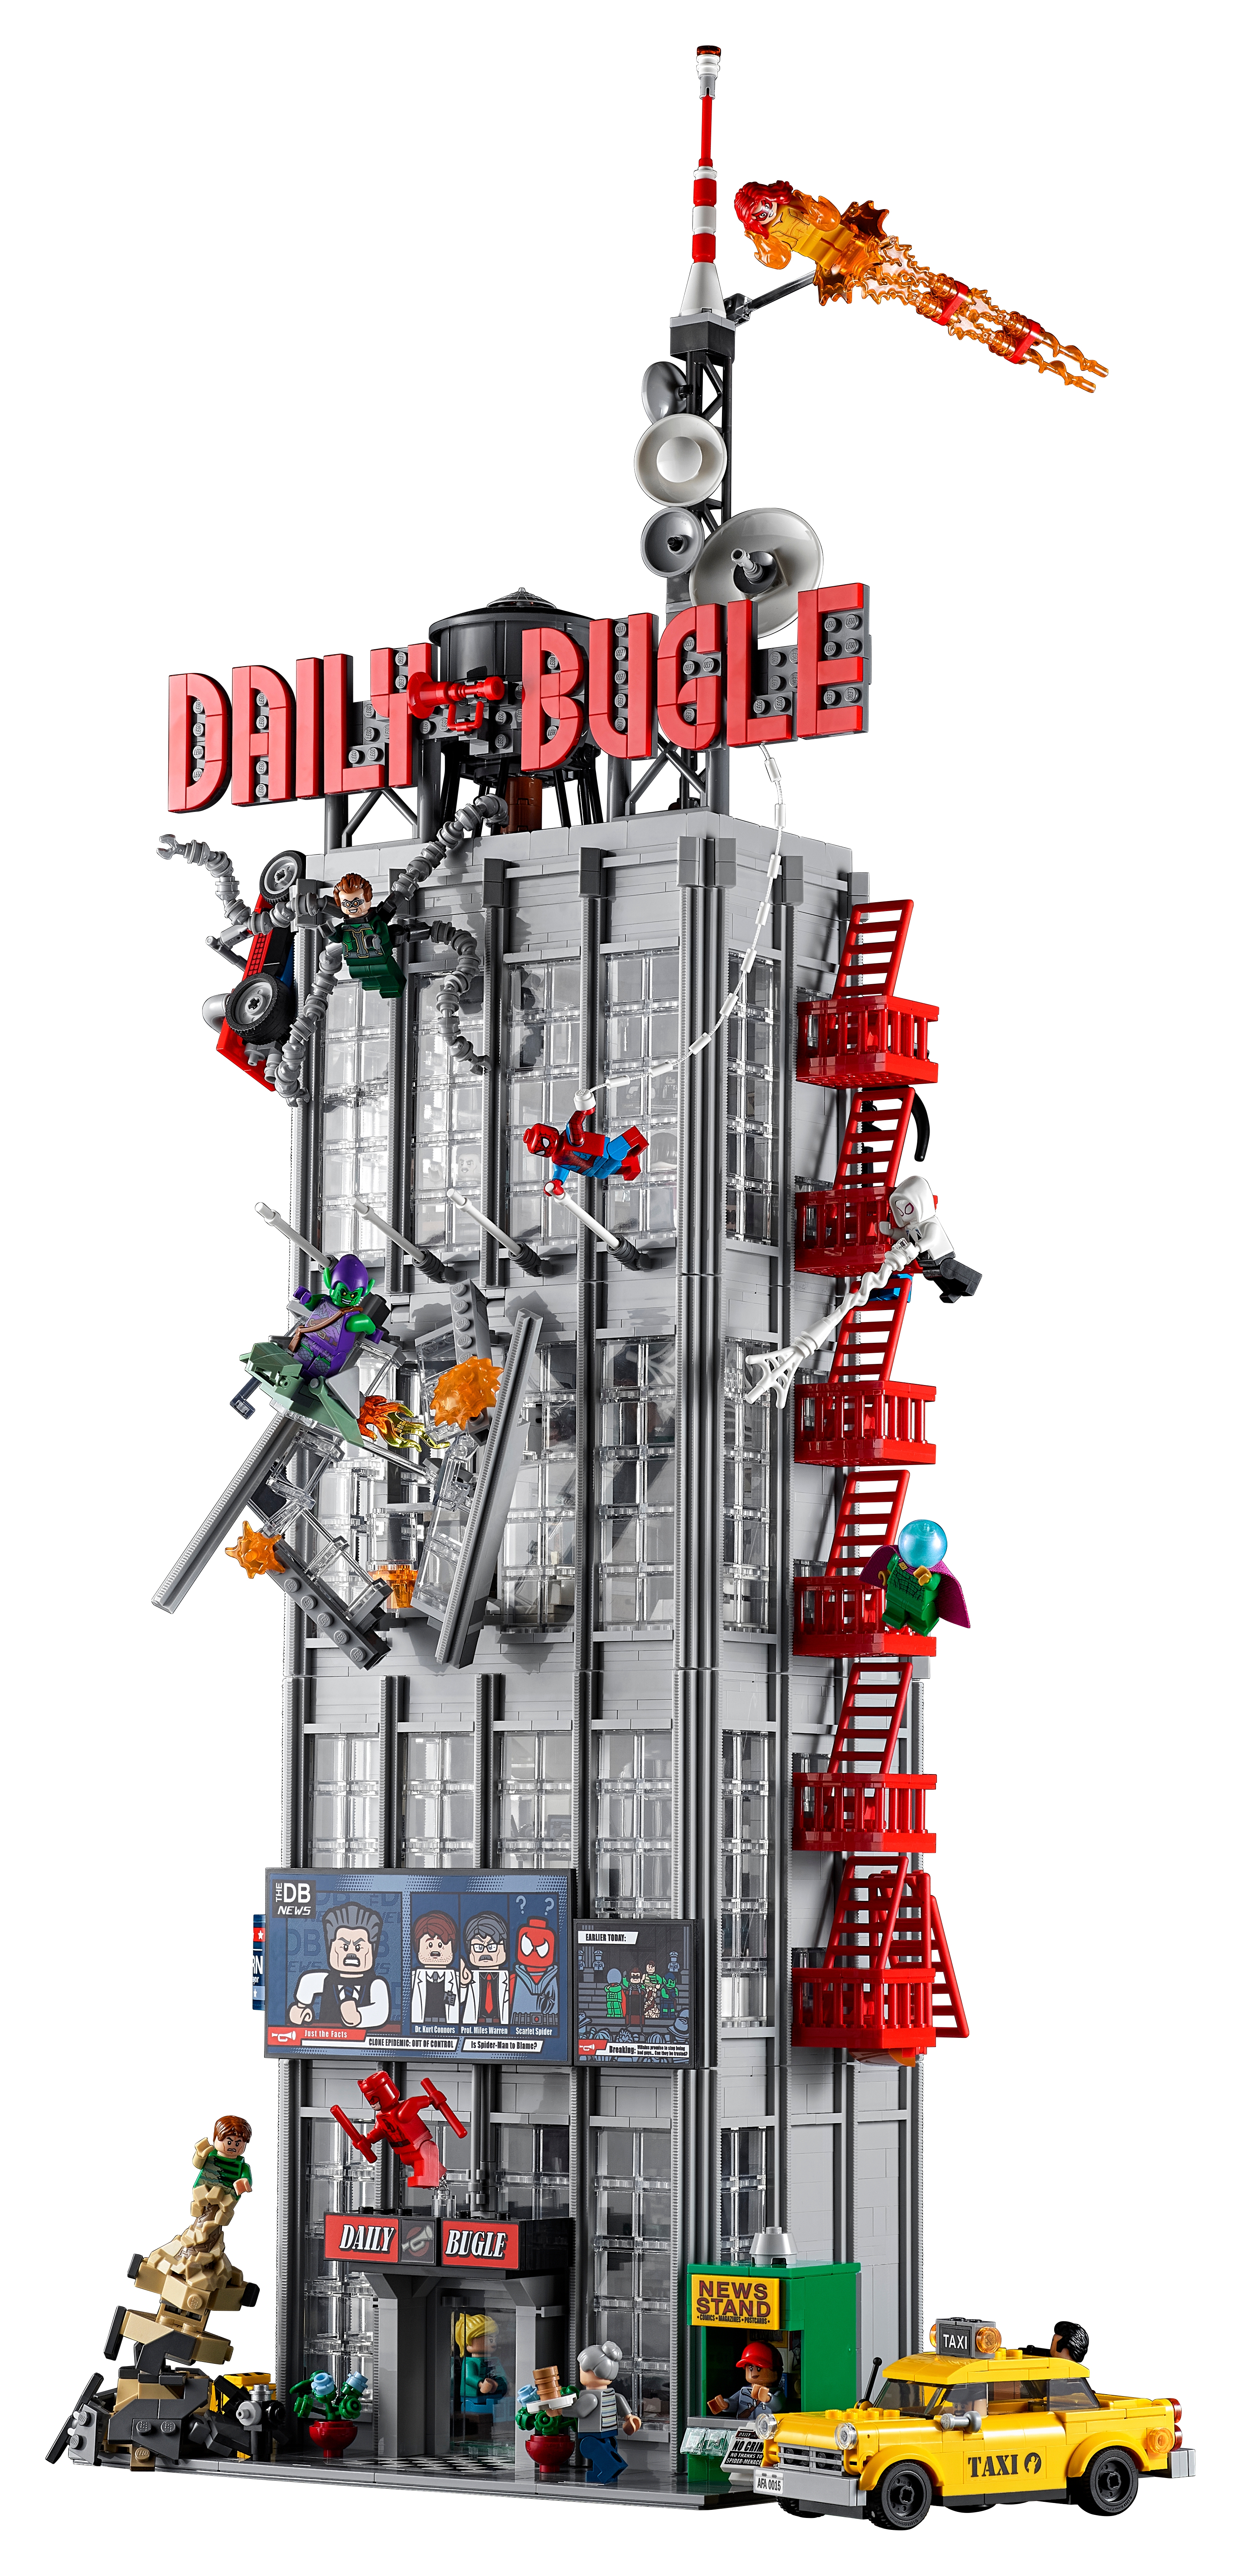 デイリー・ビューグル 76178 | レゴ スパイダーマン |レゴ®ストア公式オンラインショップJPで購入